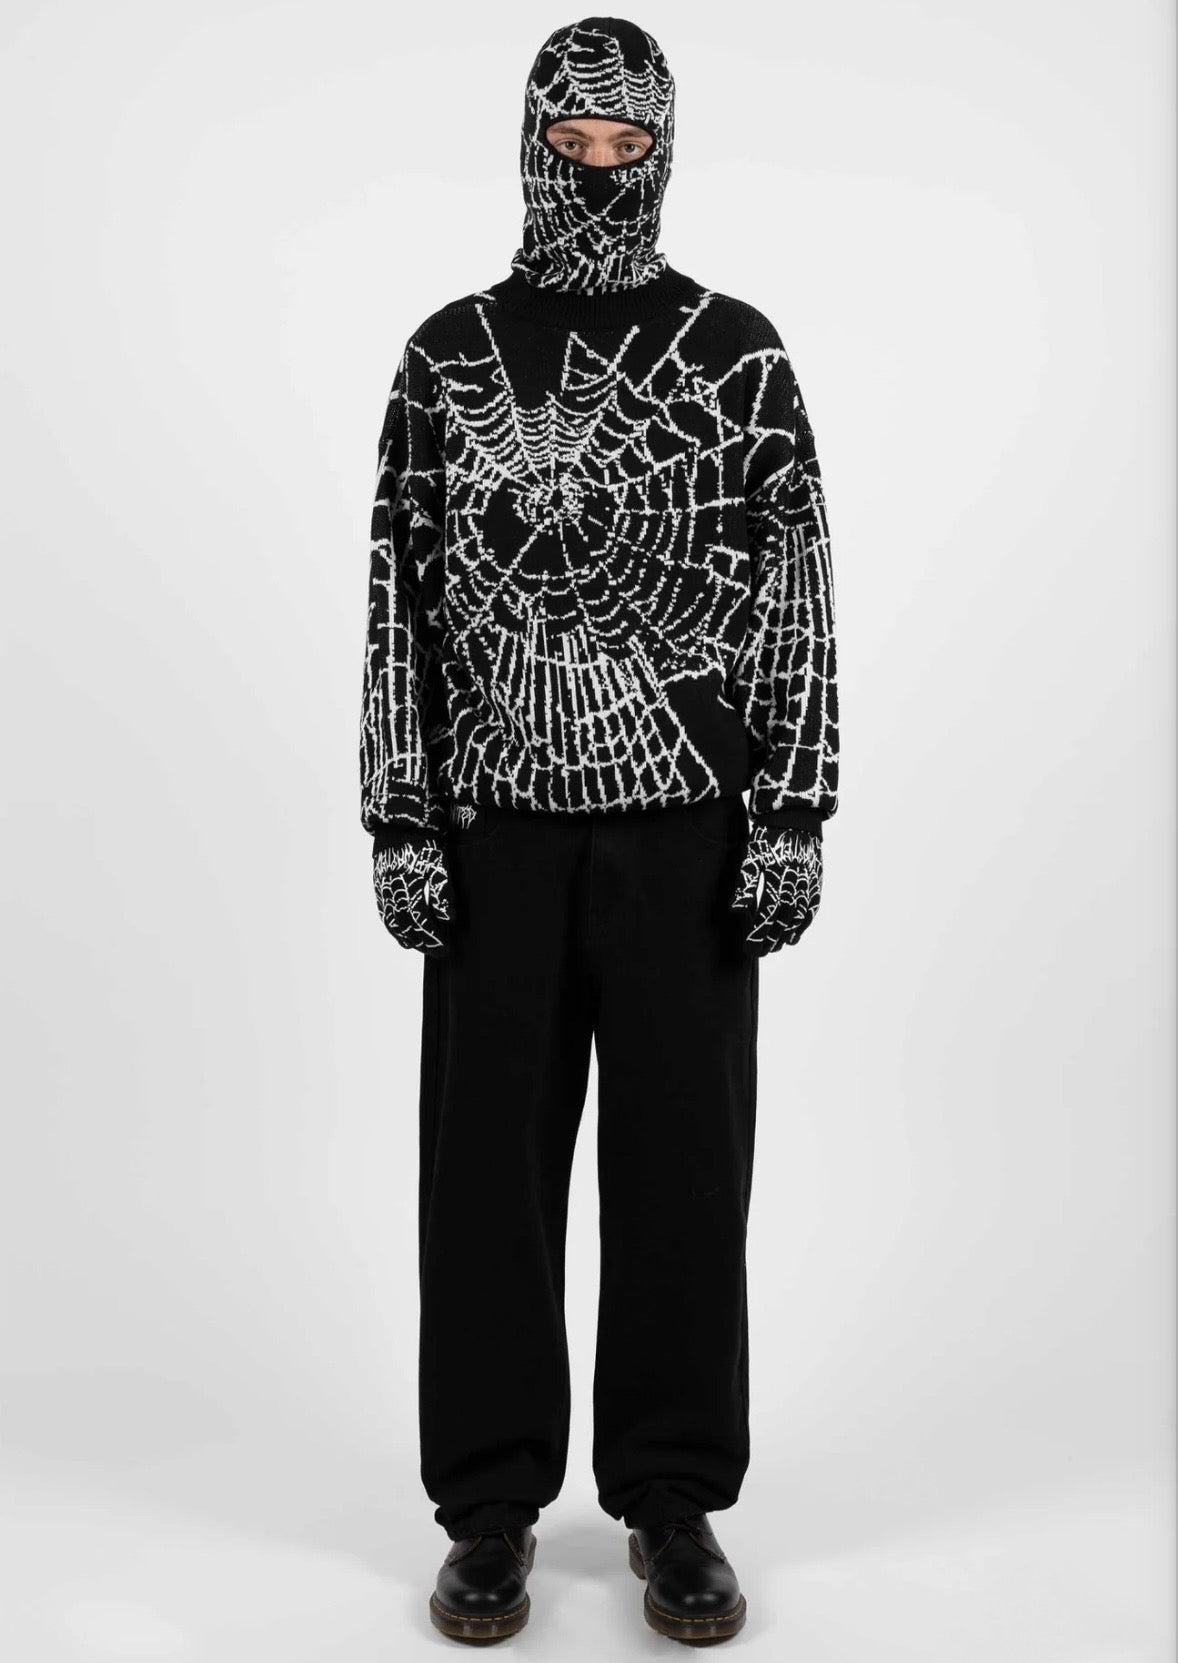 Grid Sweatshirt Black - Wasted Paris